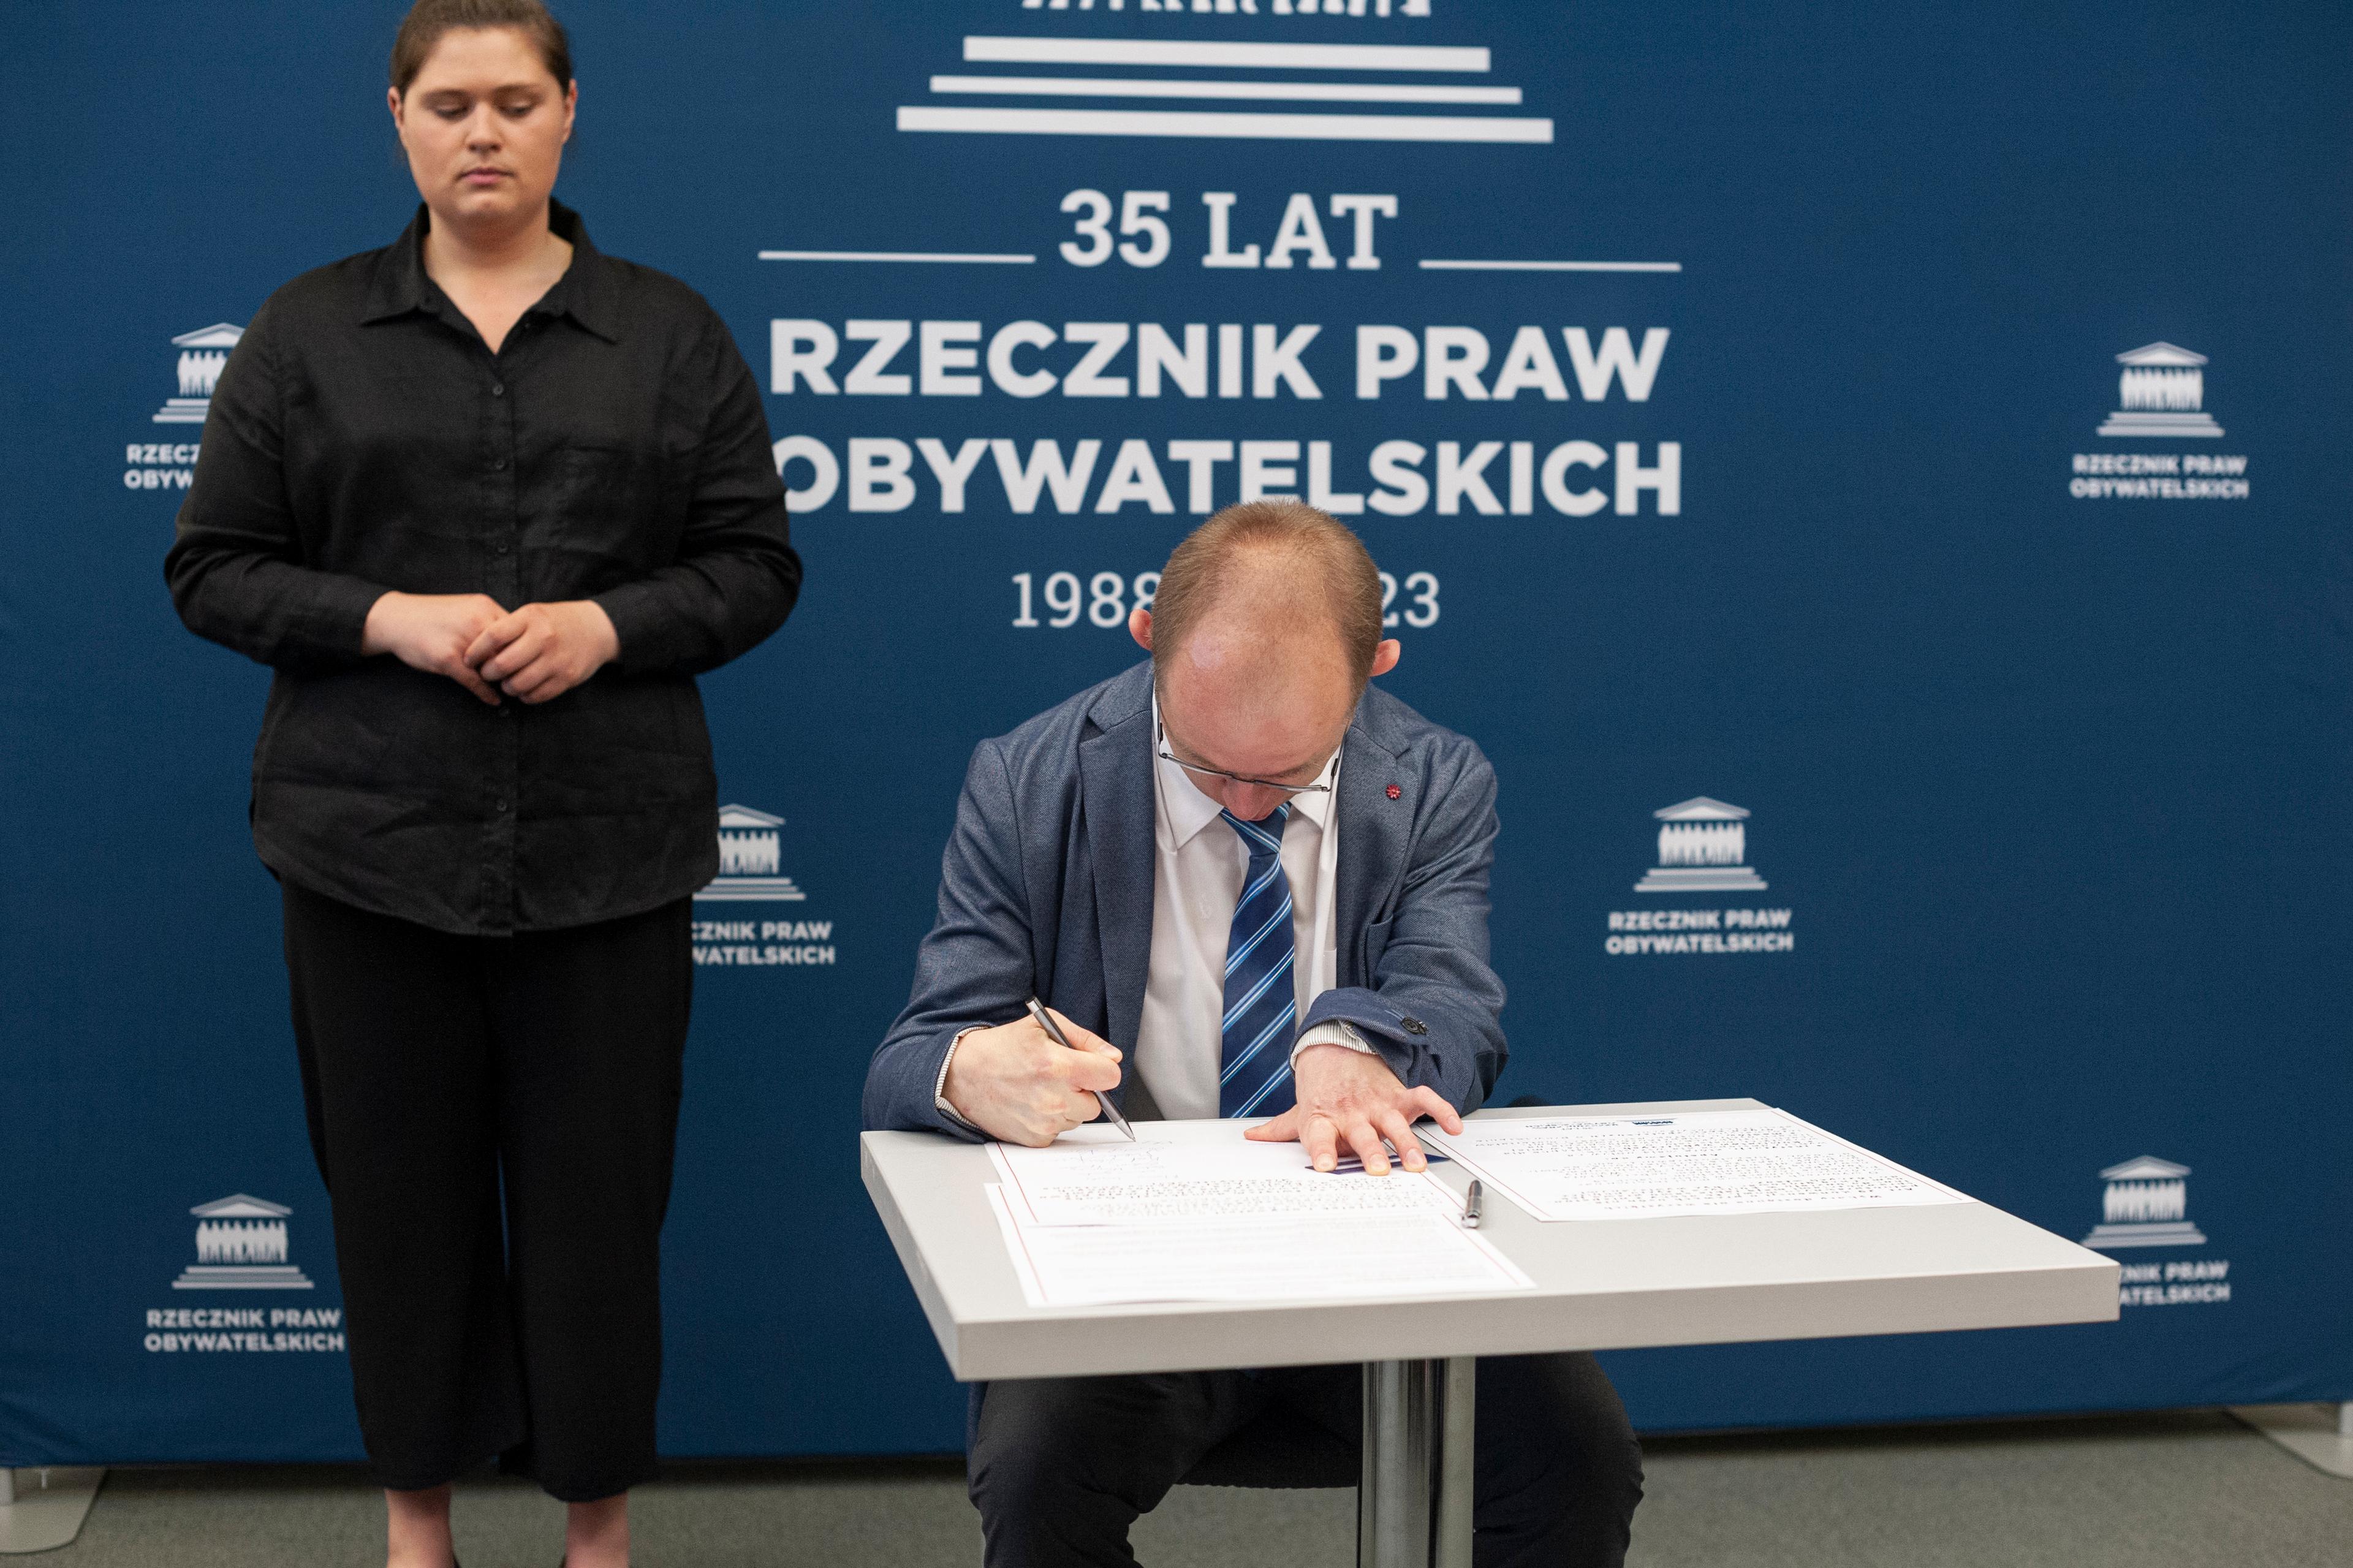 Mężczyzna w garniturze (Krzysztof Kurowski)odpisuje dokument. Obok - tłumaczka języka migowego